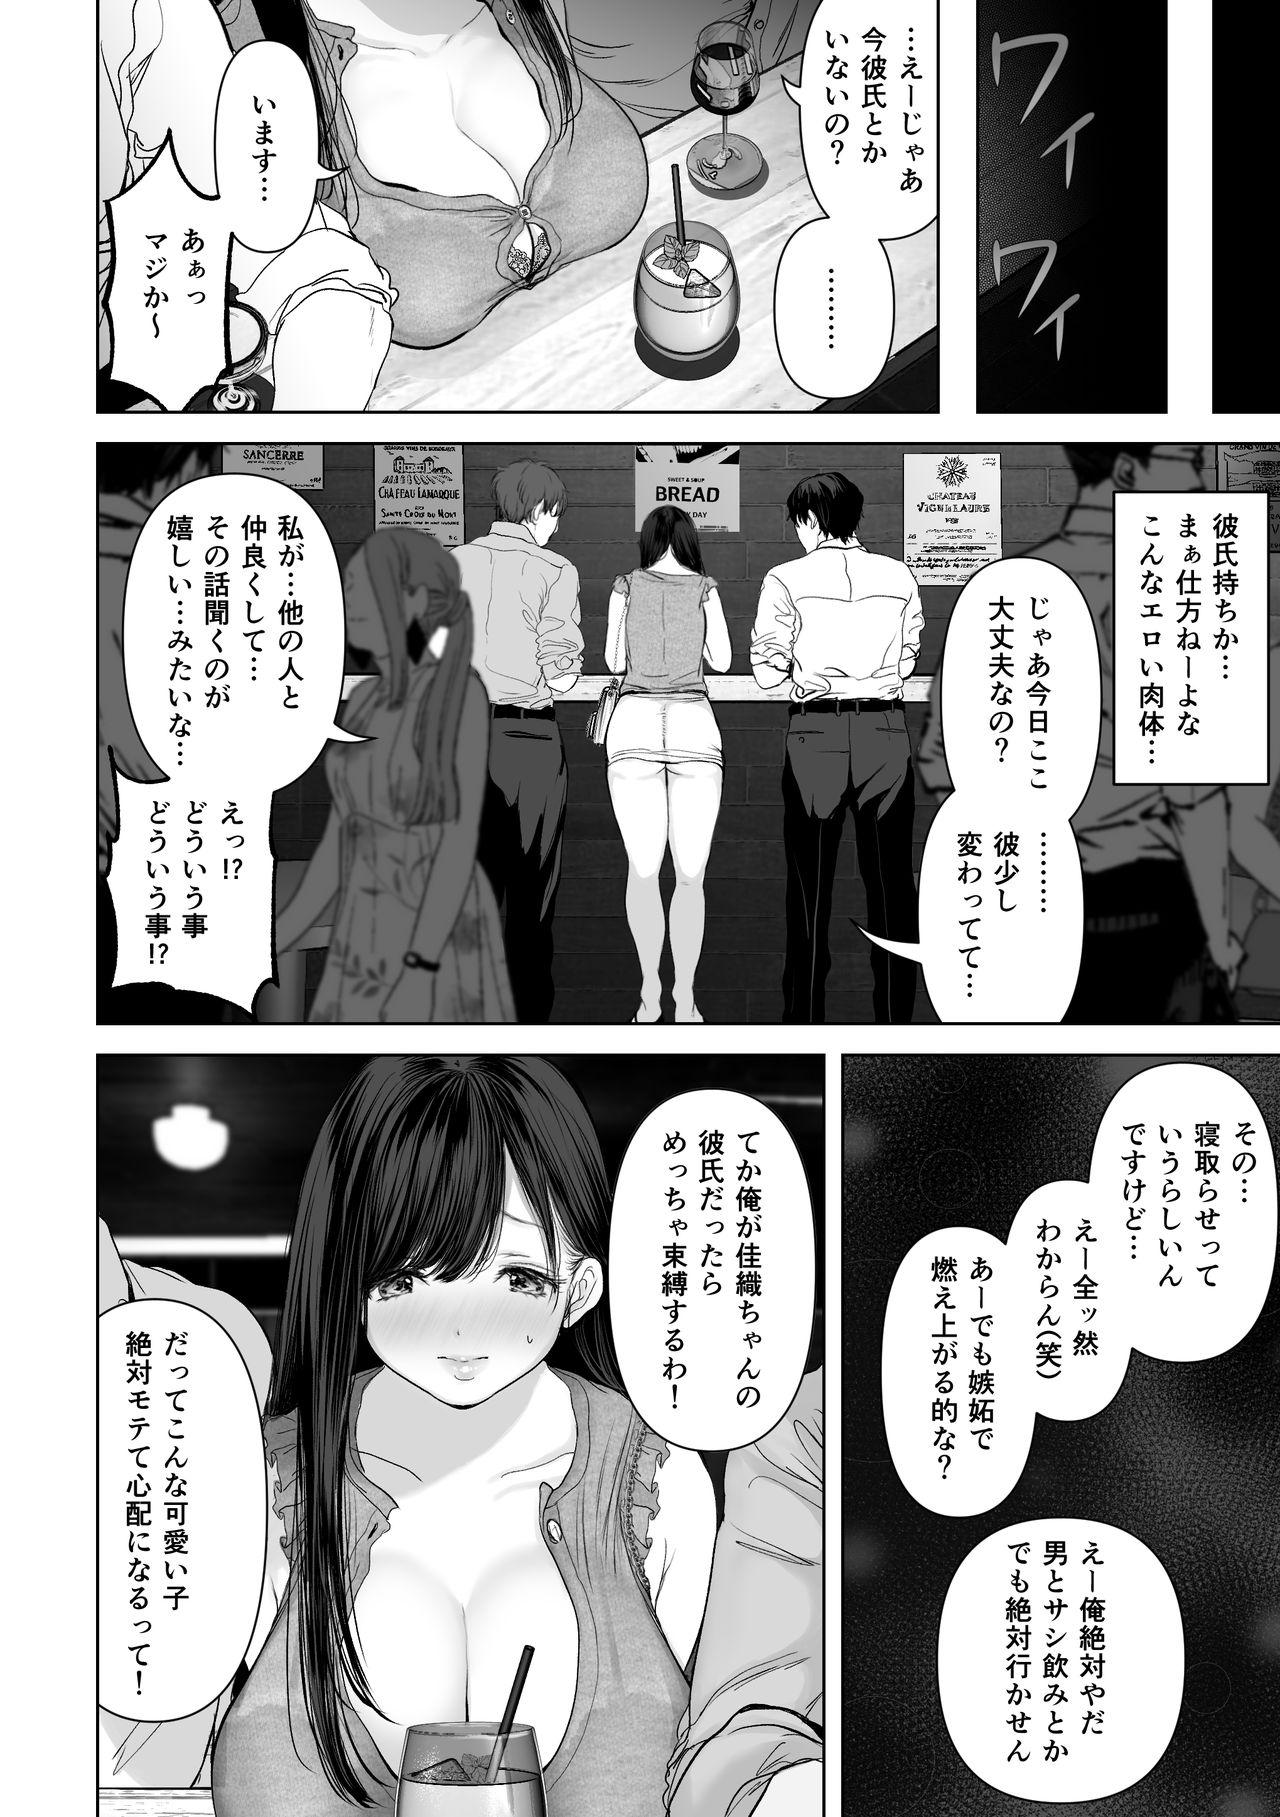 Boob Anata ga Nozomu nara 2 - Original Semen - Page 5